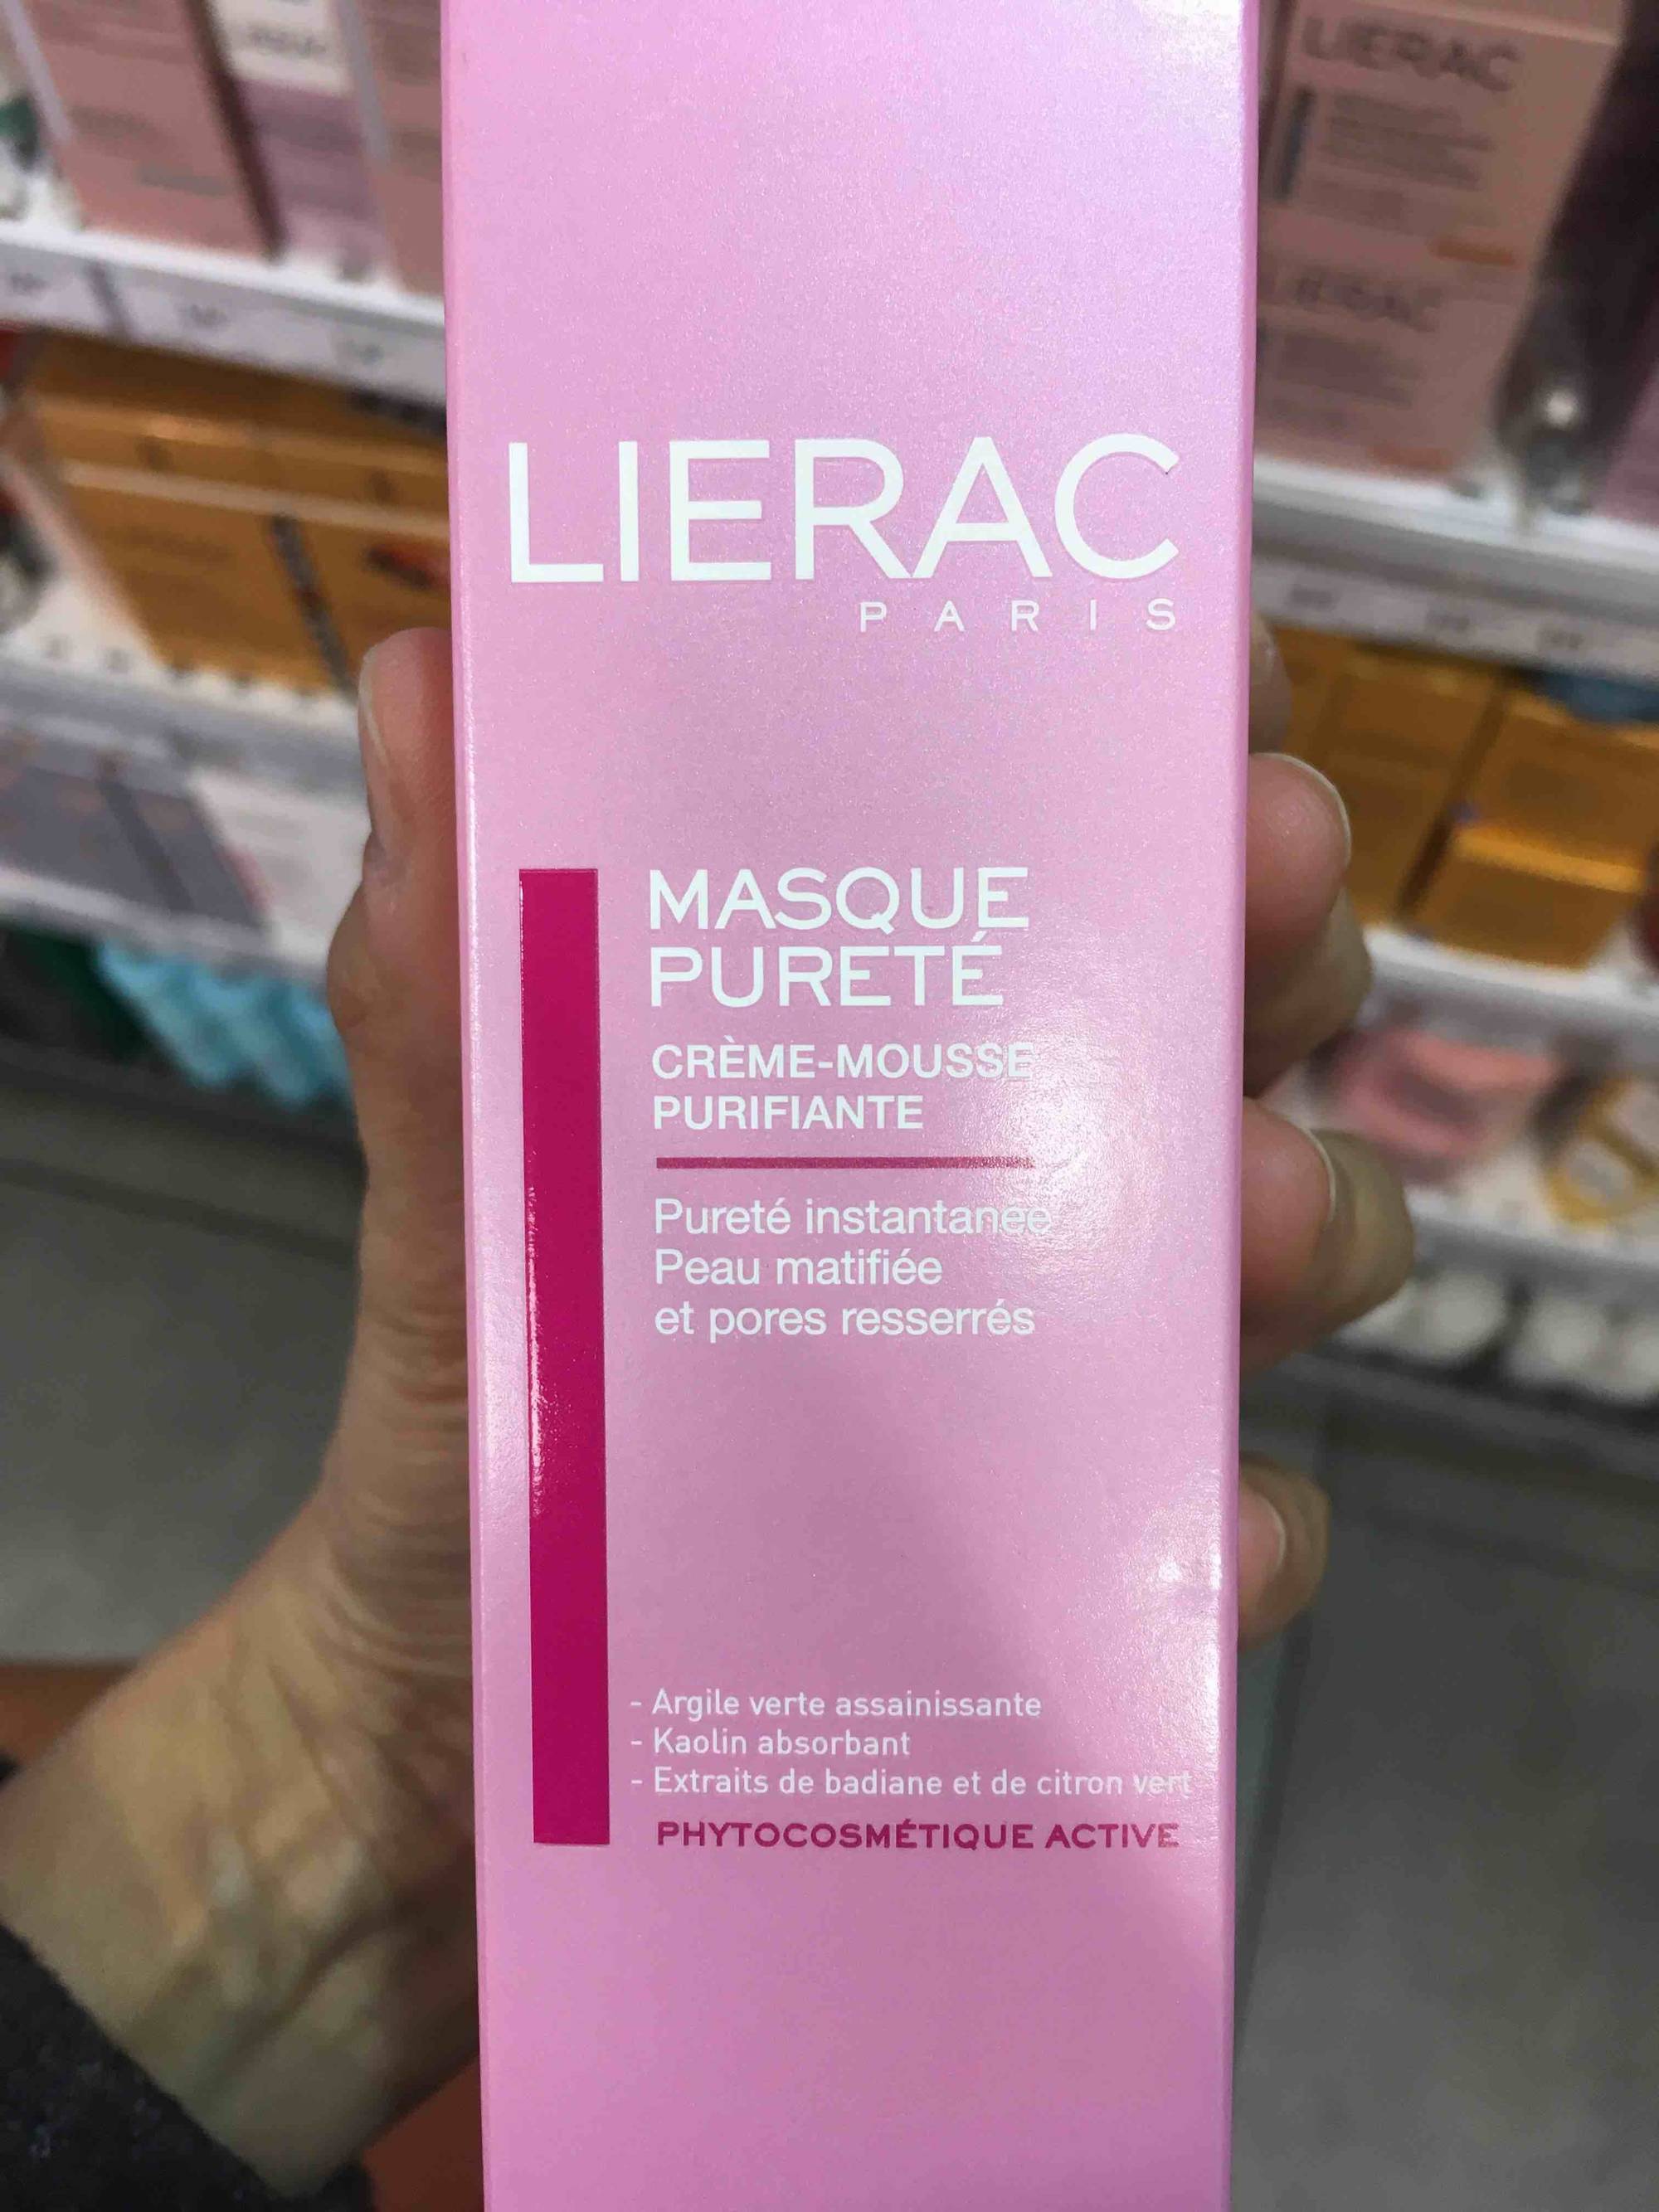 LIÉRAC PARIS - Masque purete - Crème-mousse purifiante